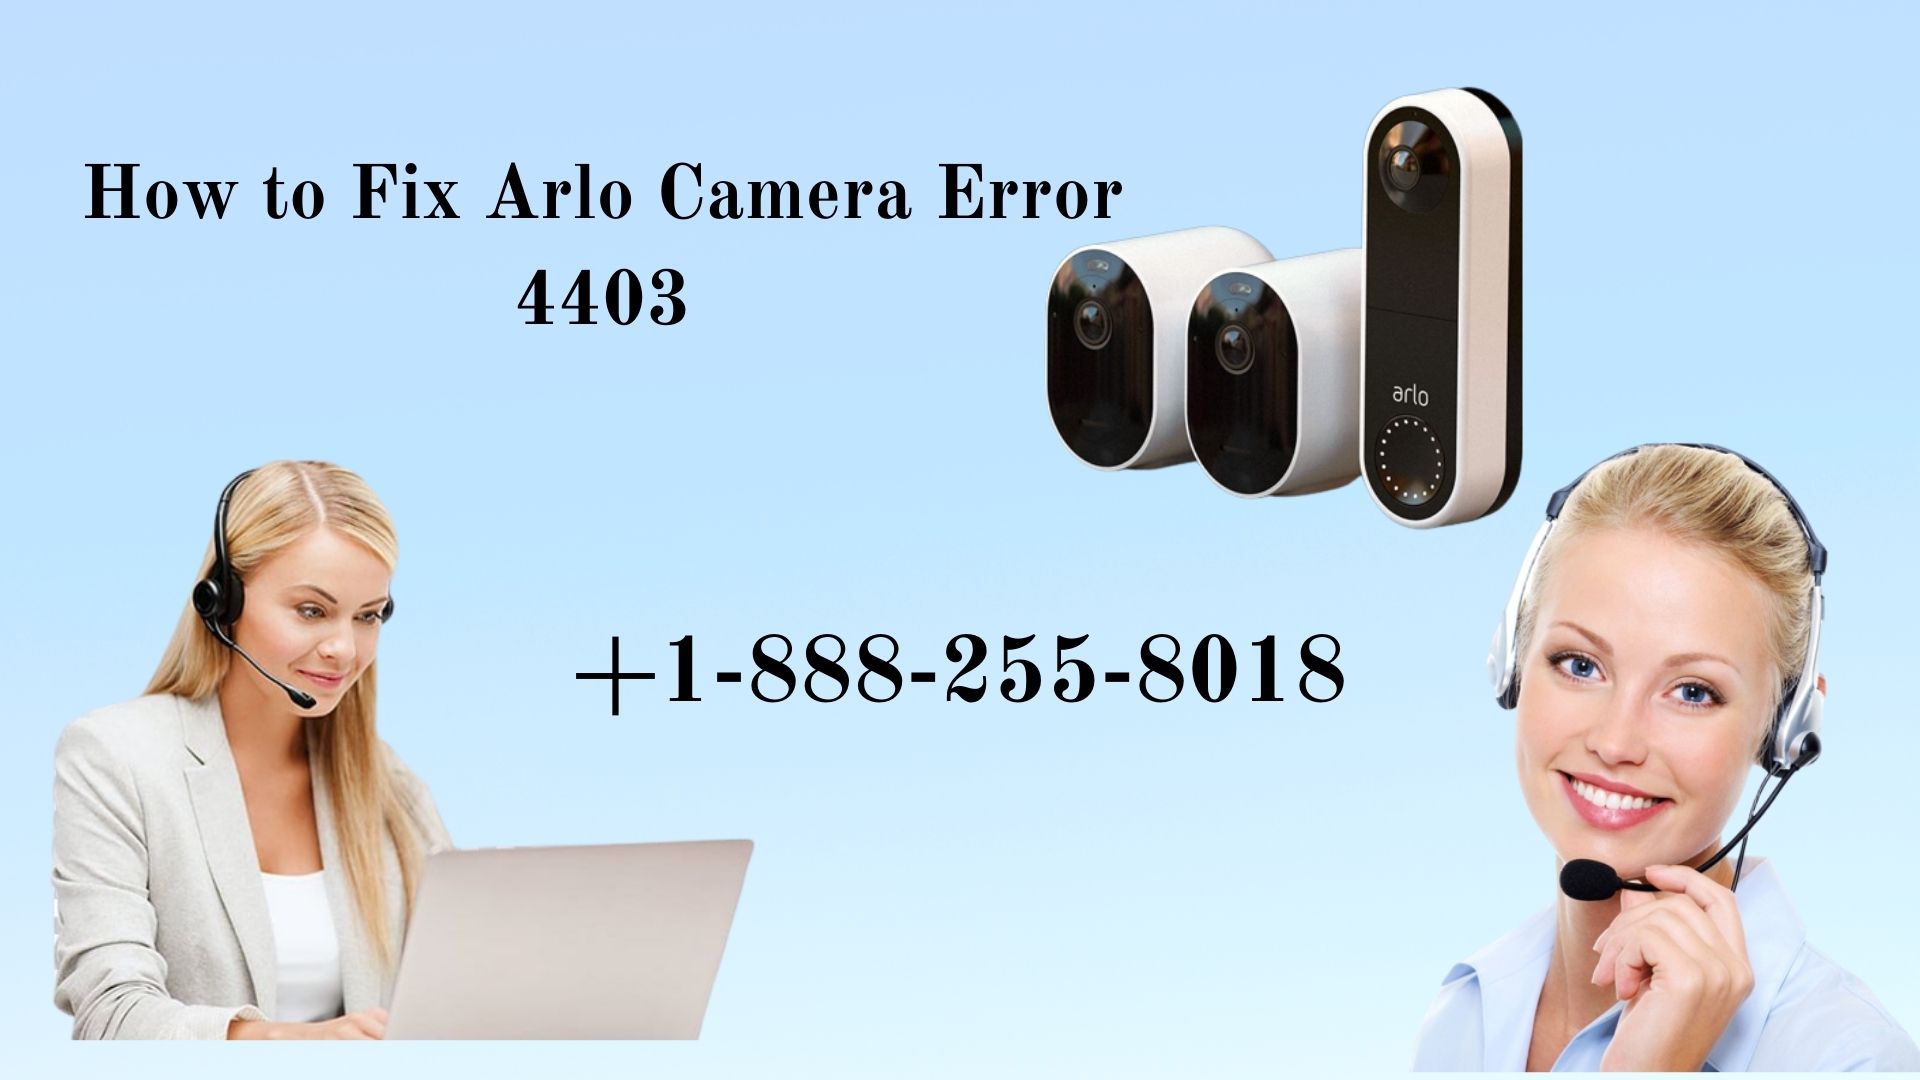 Arlo camera error 4403 | +1-888-255-8018 | Arlo Customer Services Number